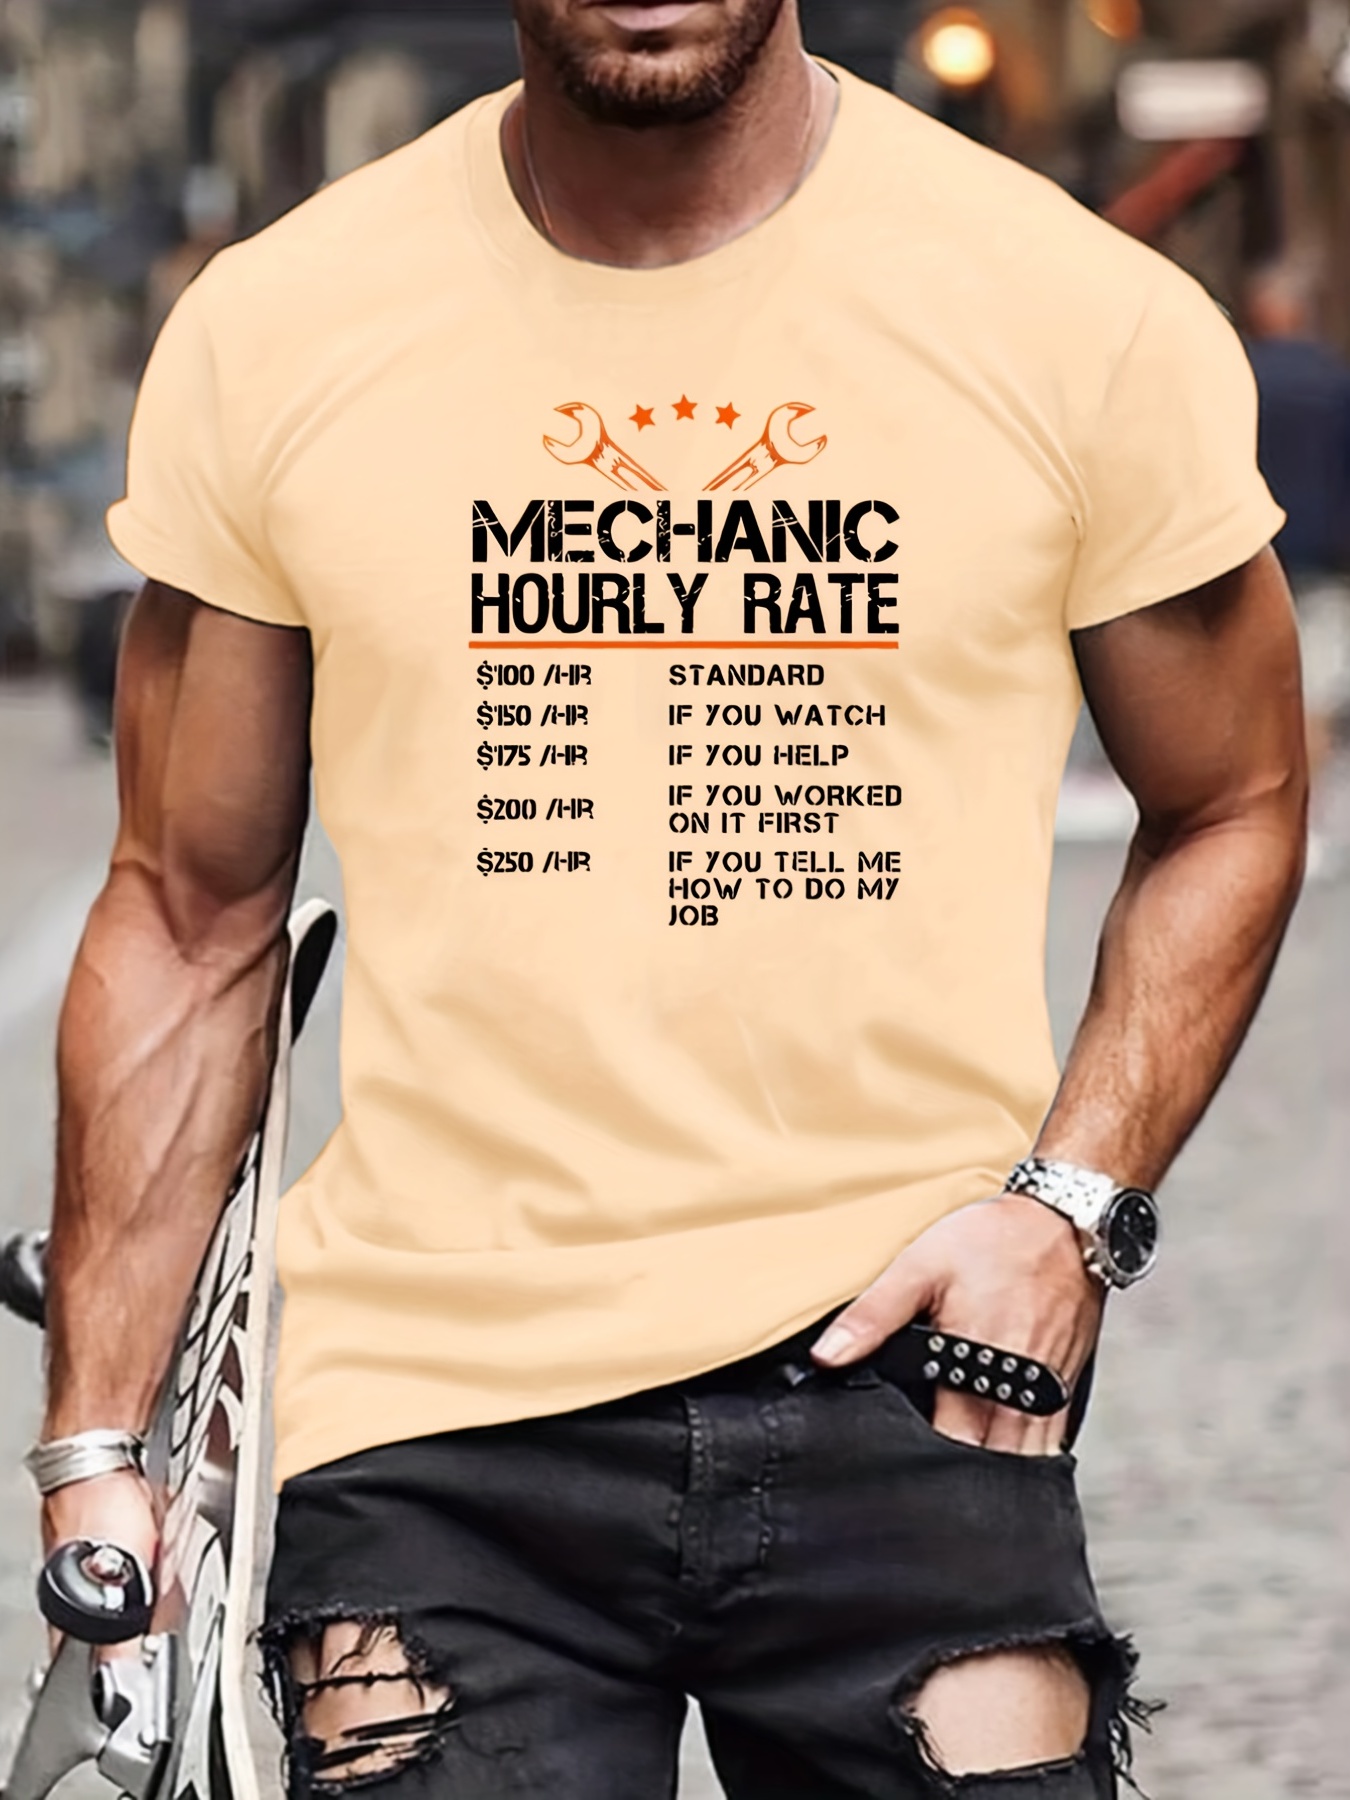 Car Mechanic Shirt Design, Mechanic Shirt Funny Gifts